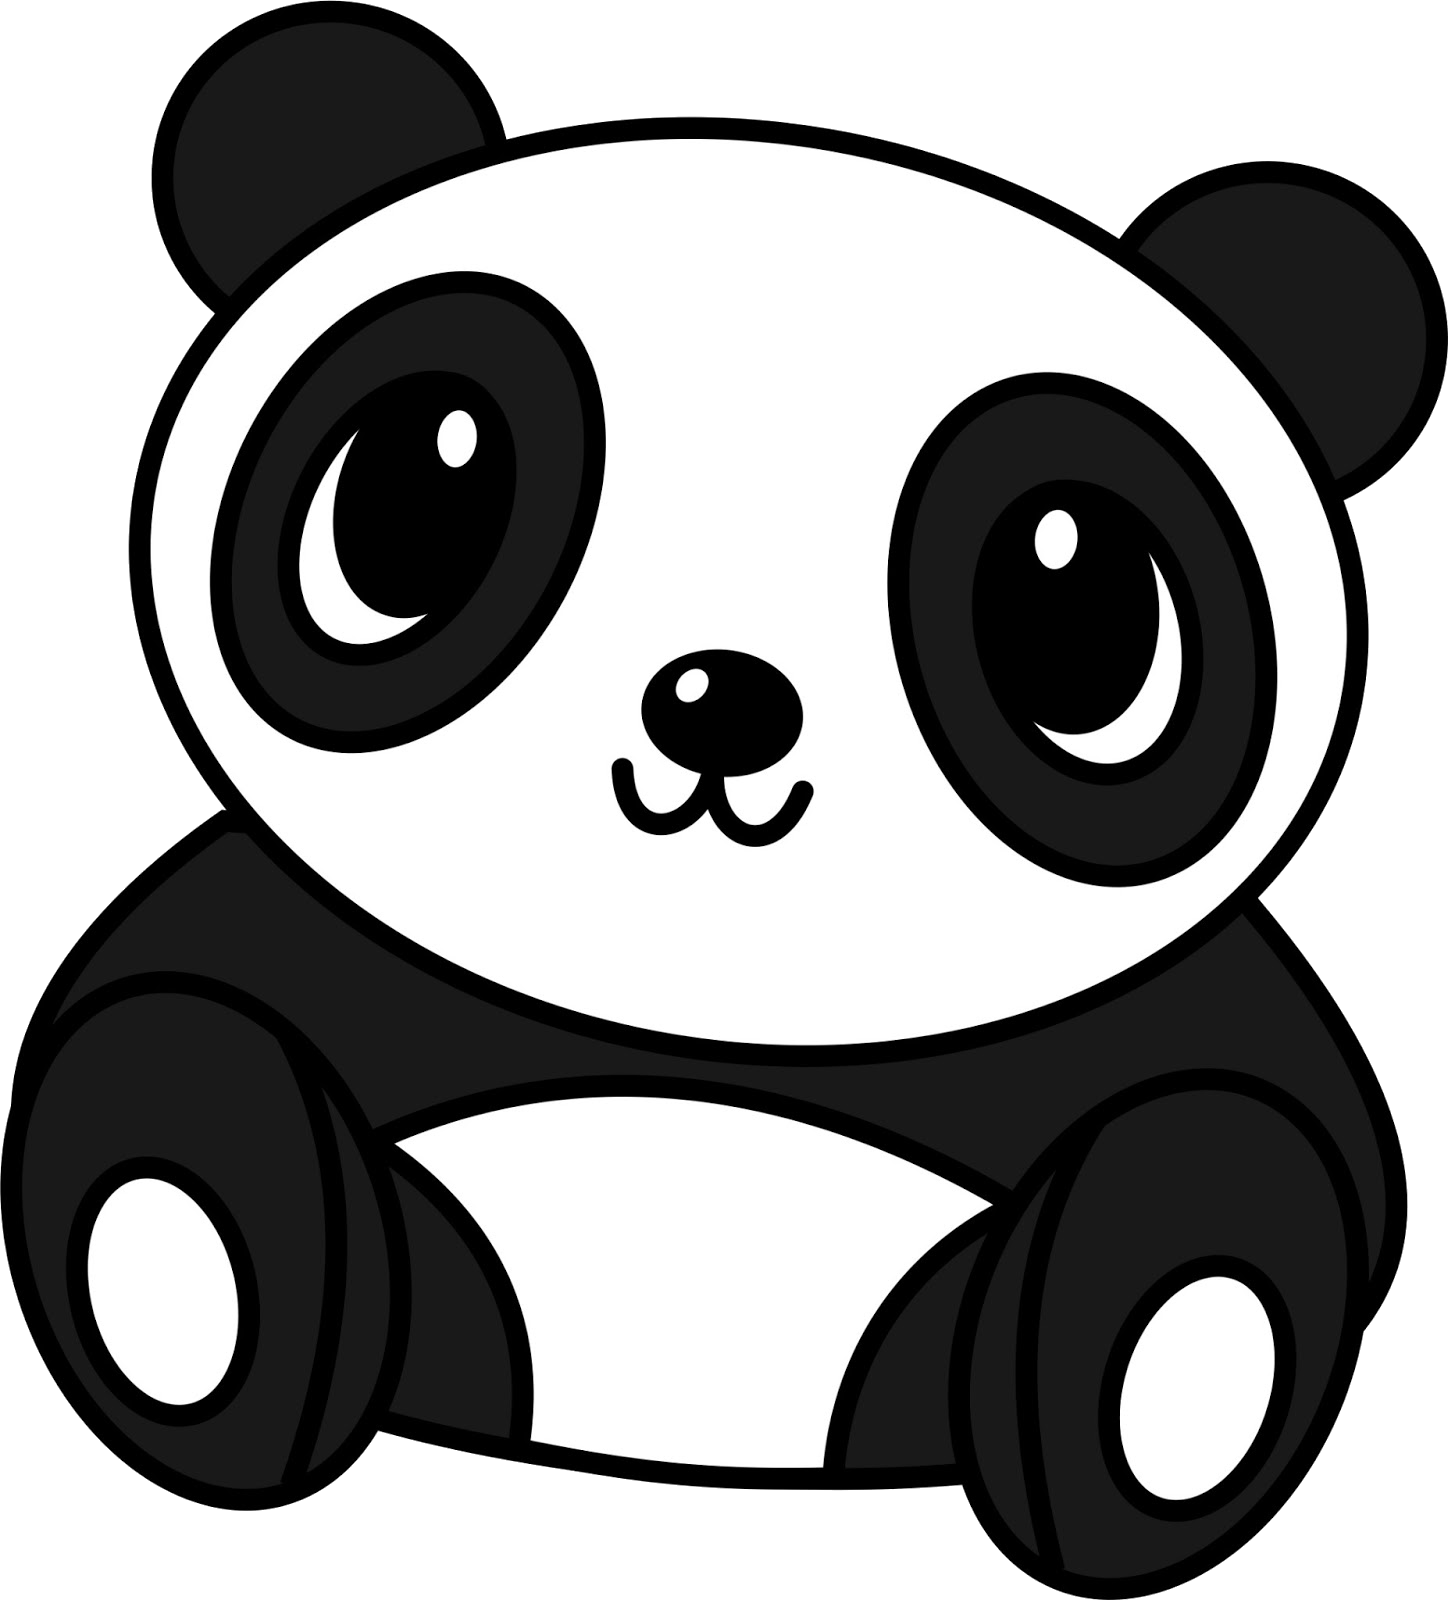 Pandas Kawaii Png - T Shirt De Panda No Roblox Transparent PNG - 375x360 -  Free Download on NicePNG